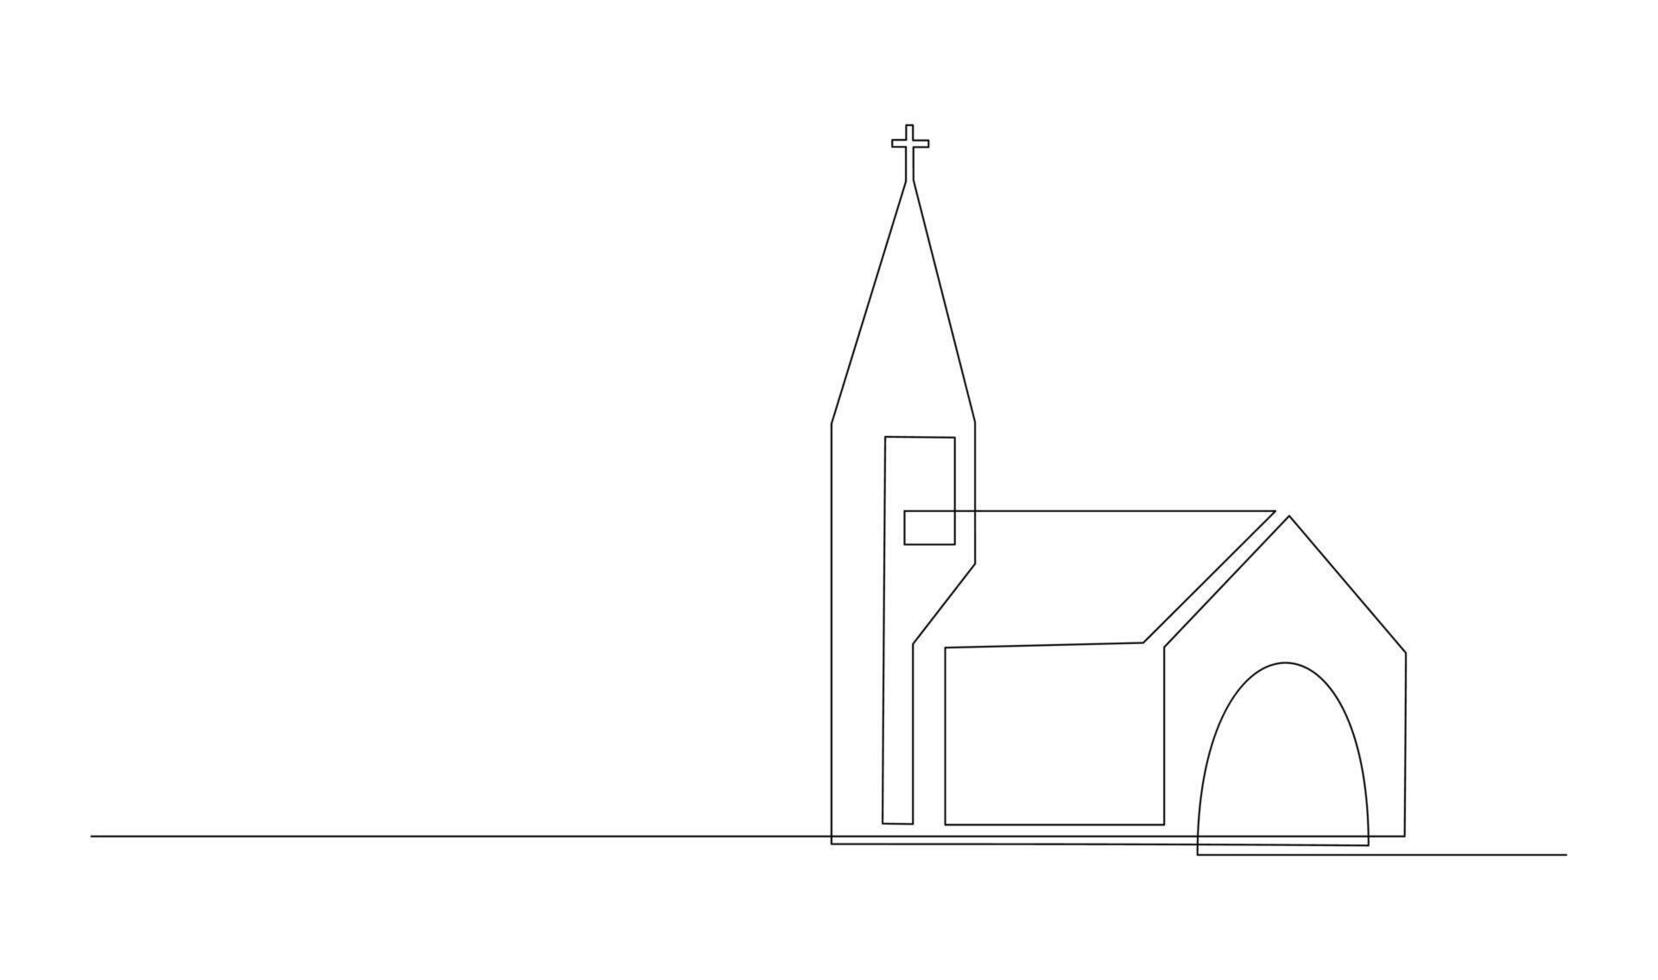 Kirche einer Linie Zeichnung isoliert auf Weiß Hintergrund vektor